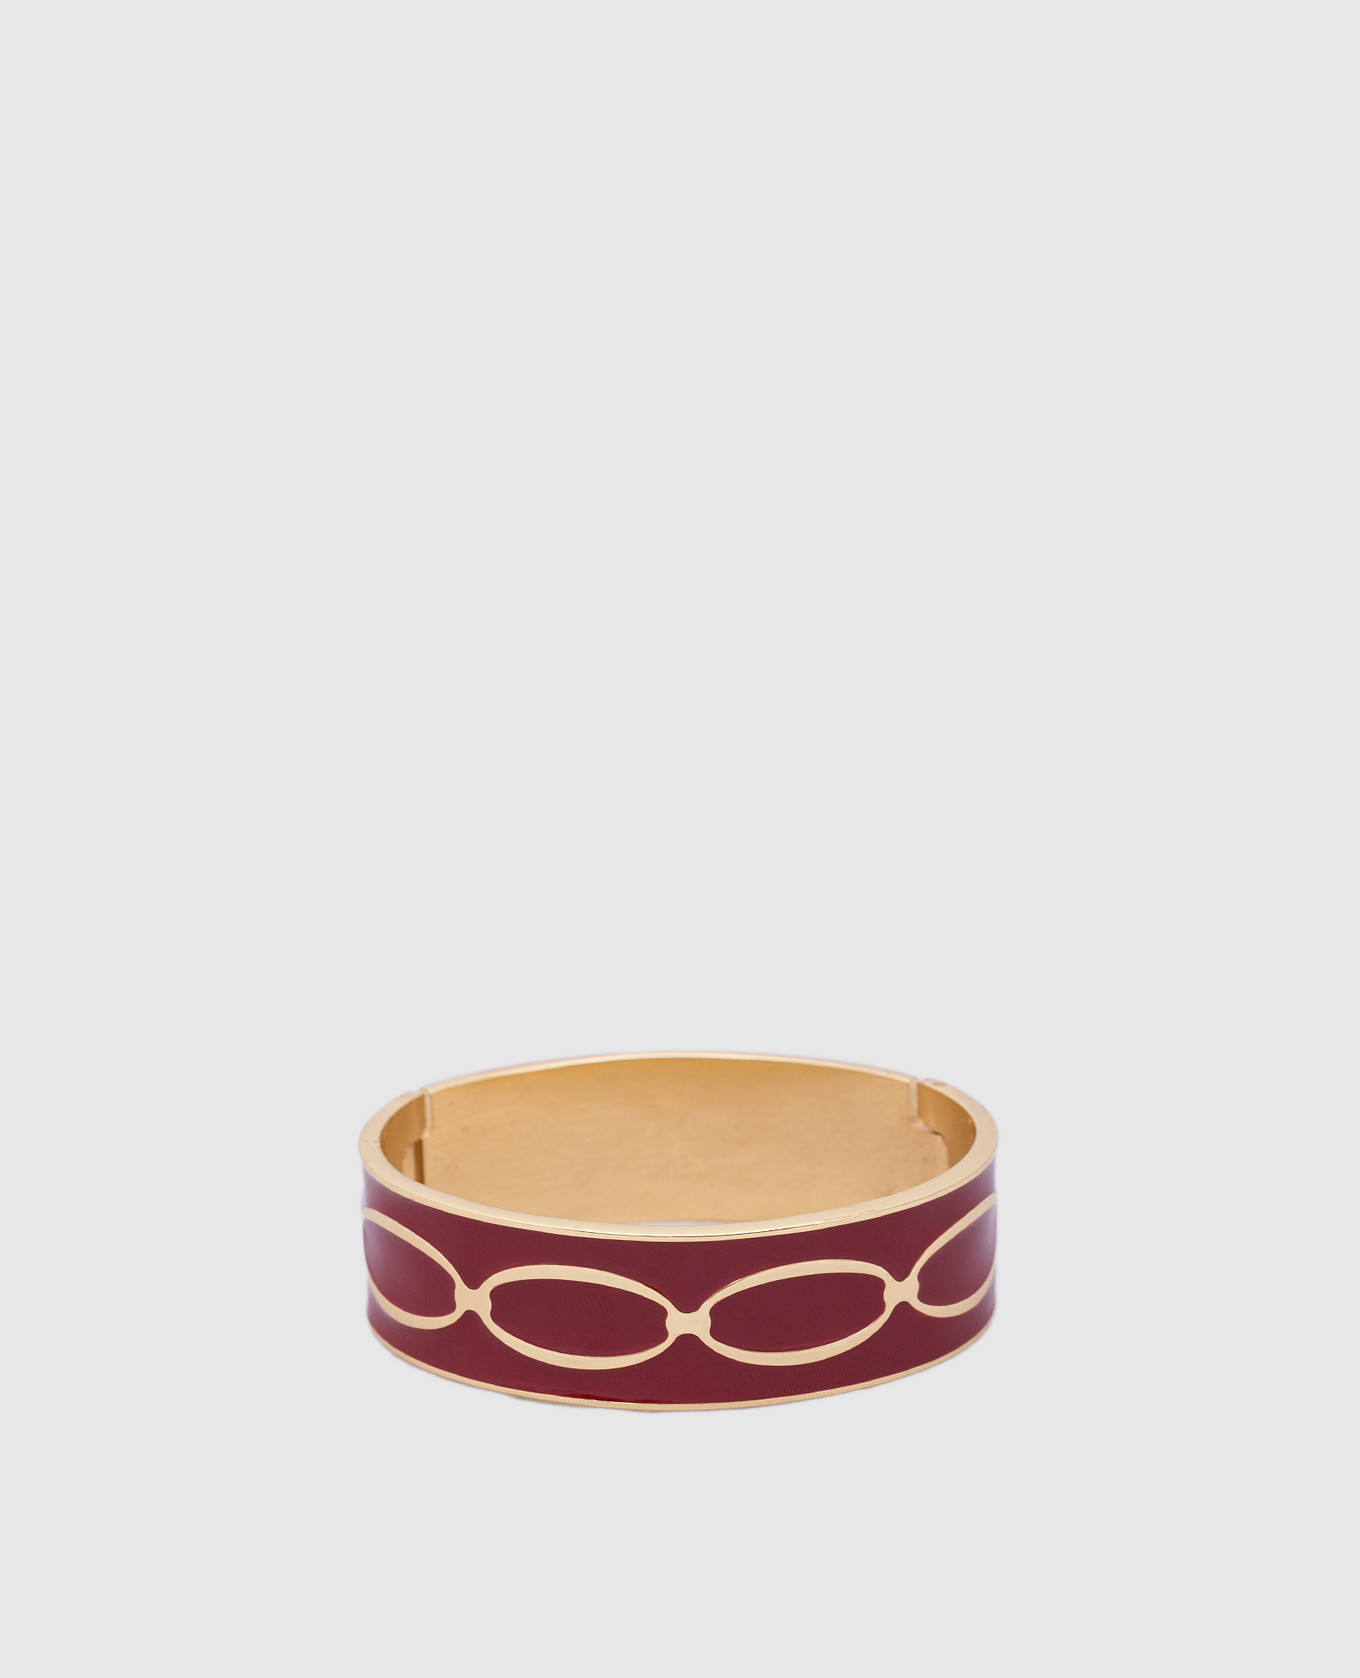 Red Knot bracelet with 24-karat gold plating